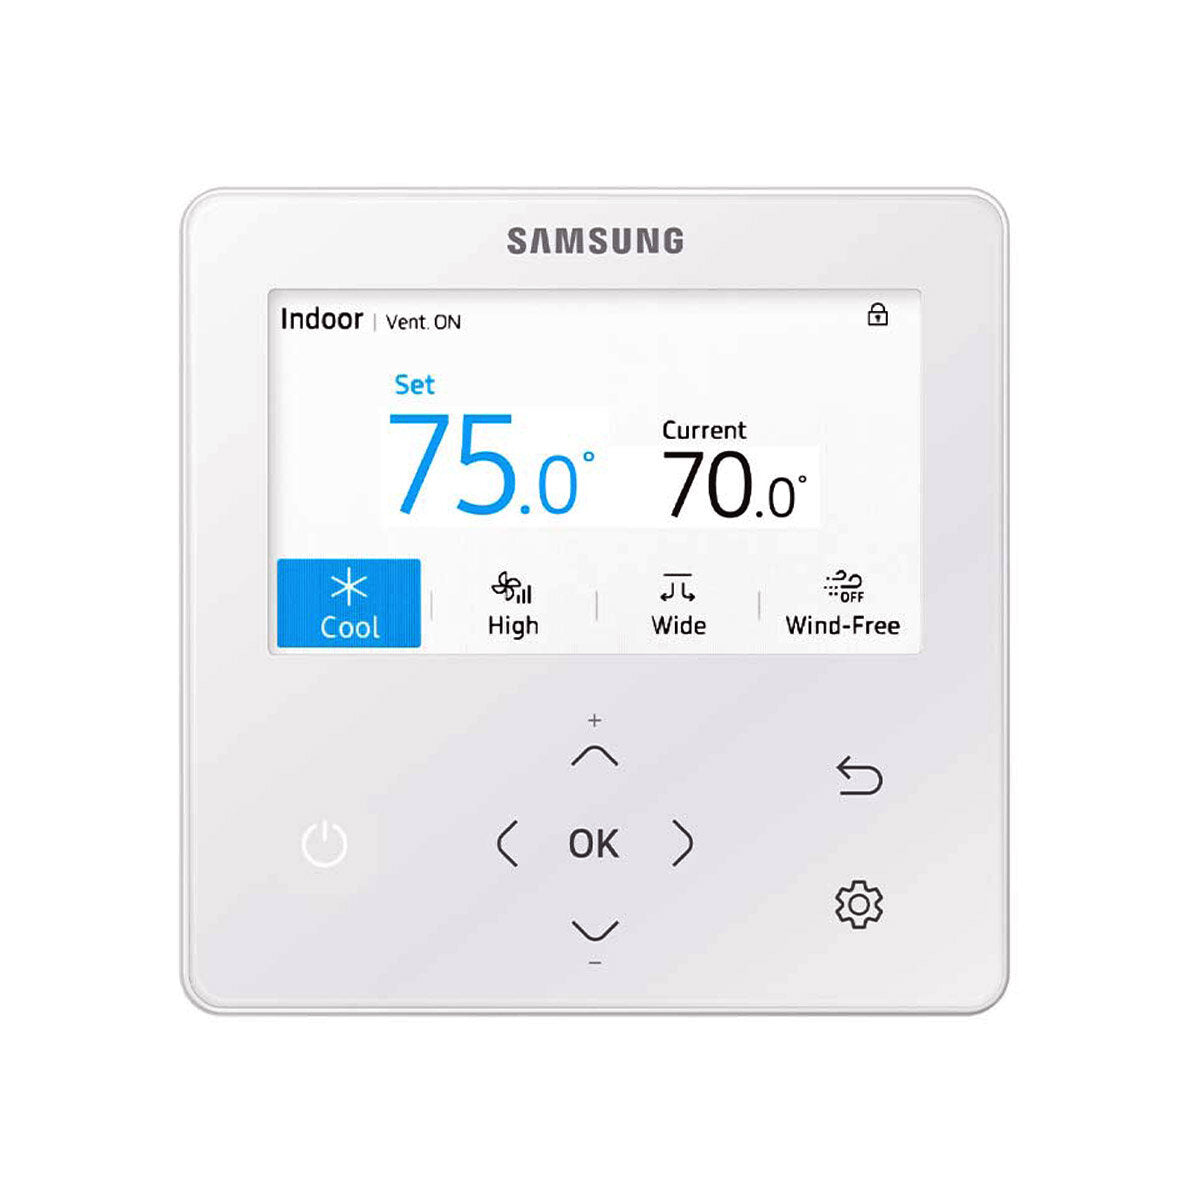 Samsung Klimaanlage Windfree 4-fach Pentasplit 7000 + 9000 + 9000 + 9000 + 12000 BTU Inverter A++ Außengerät 10,0 kW